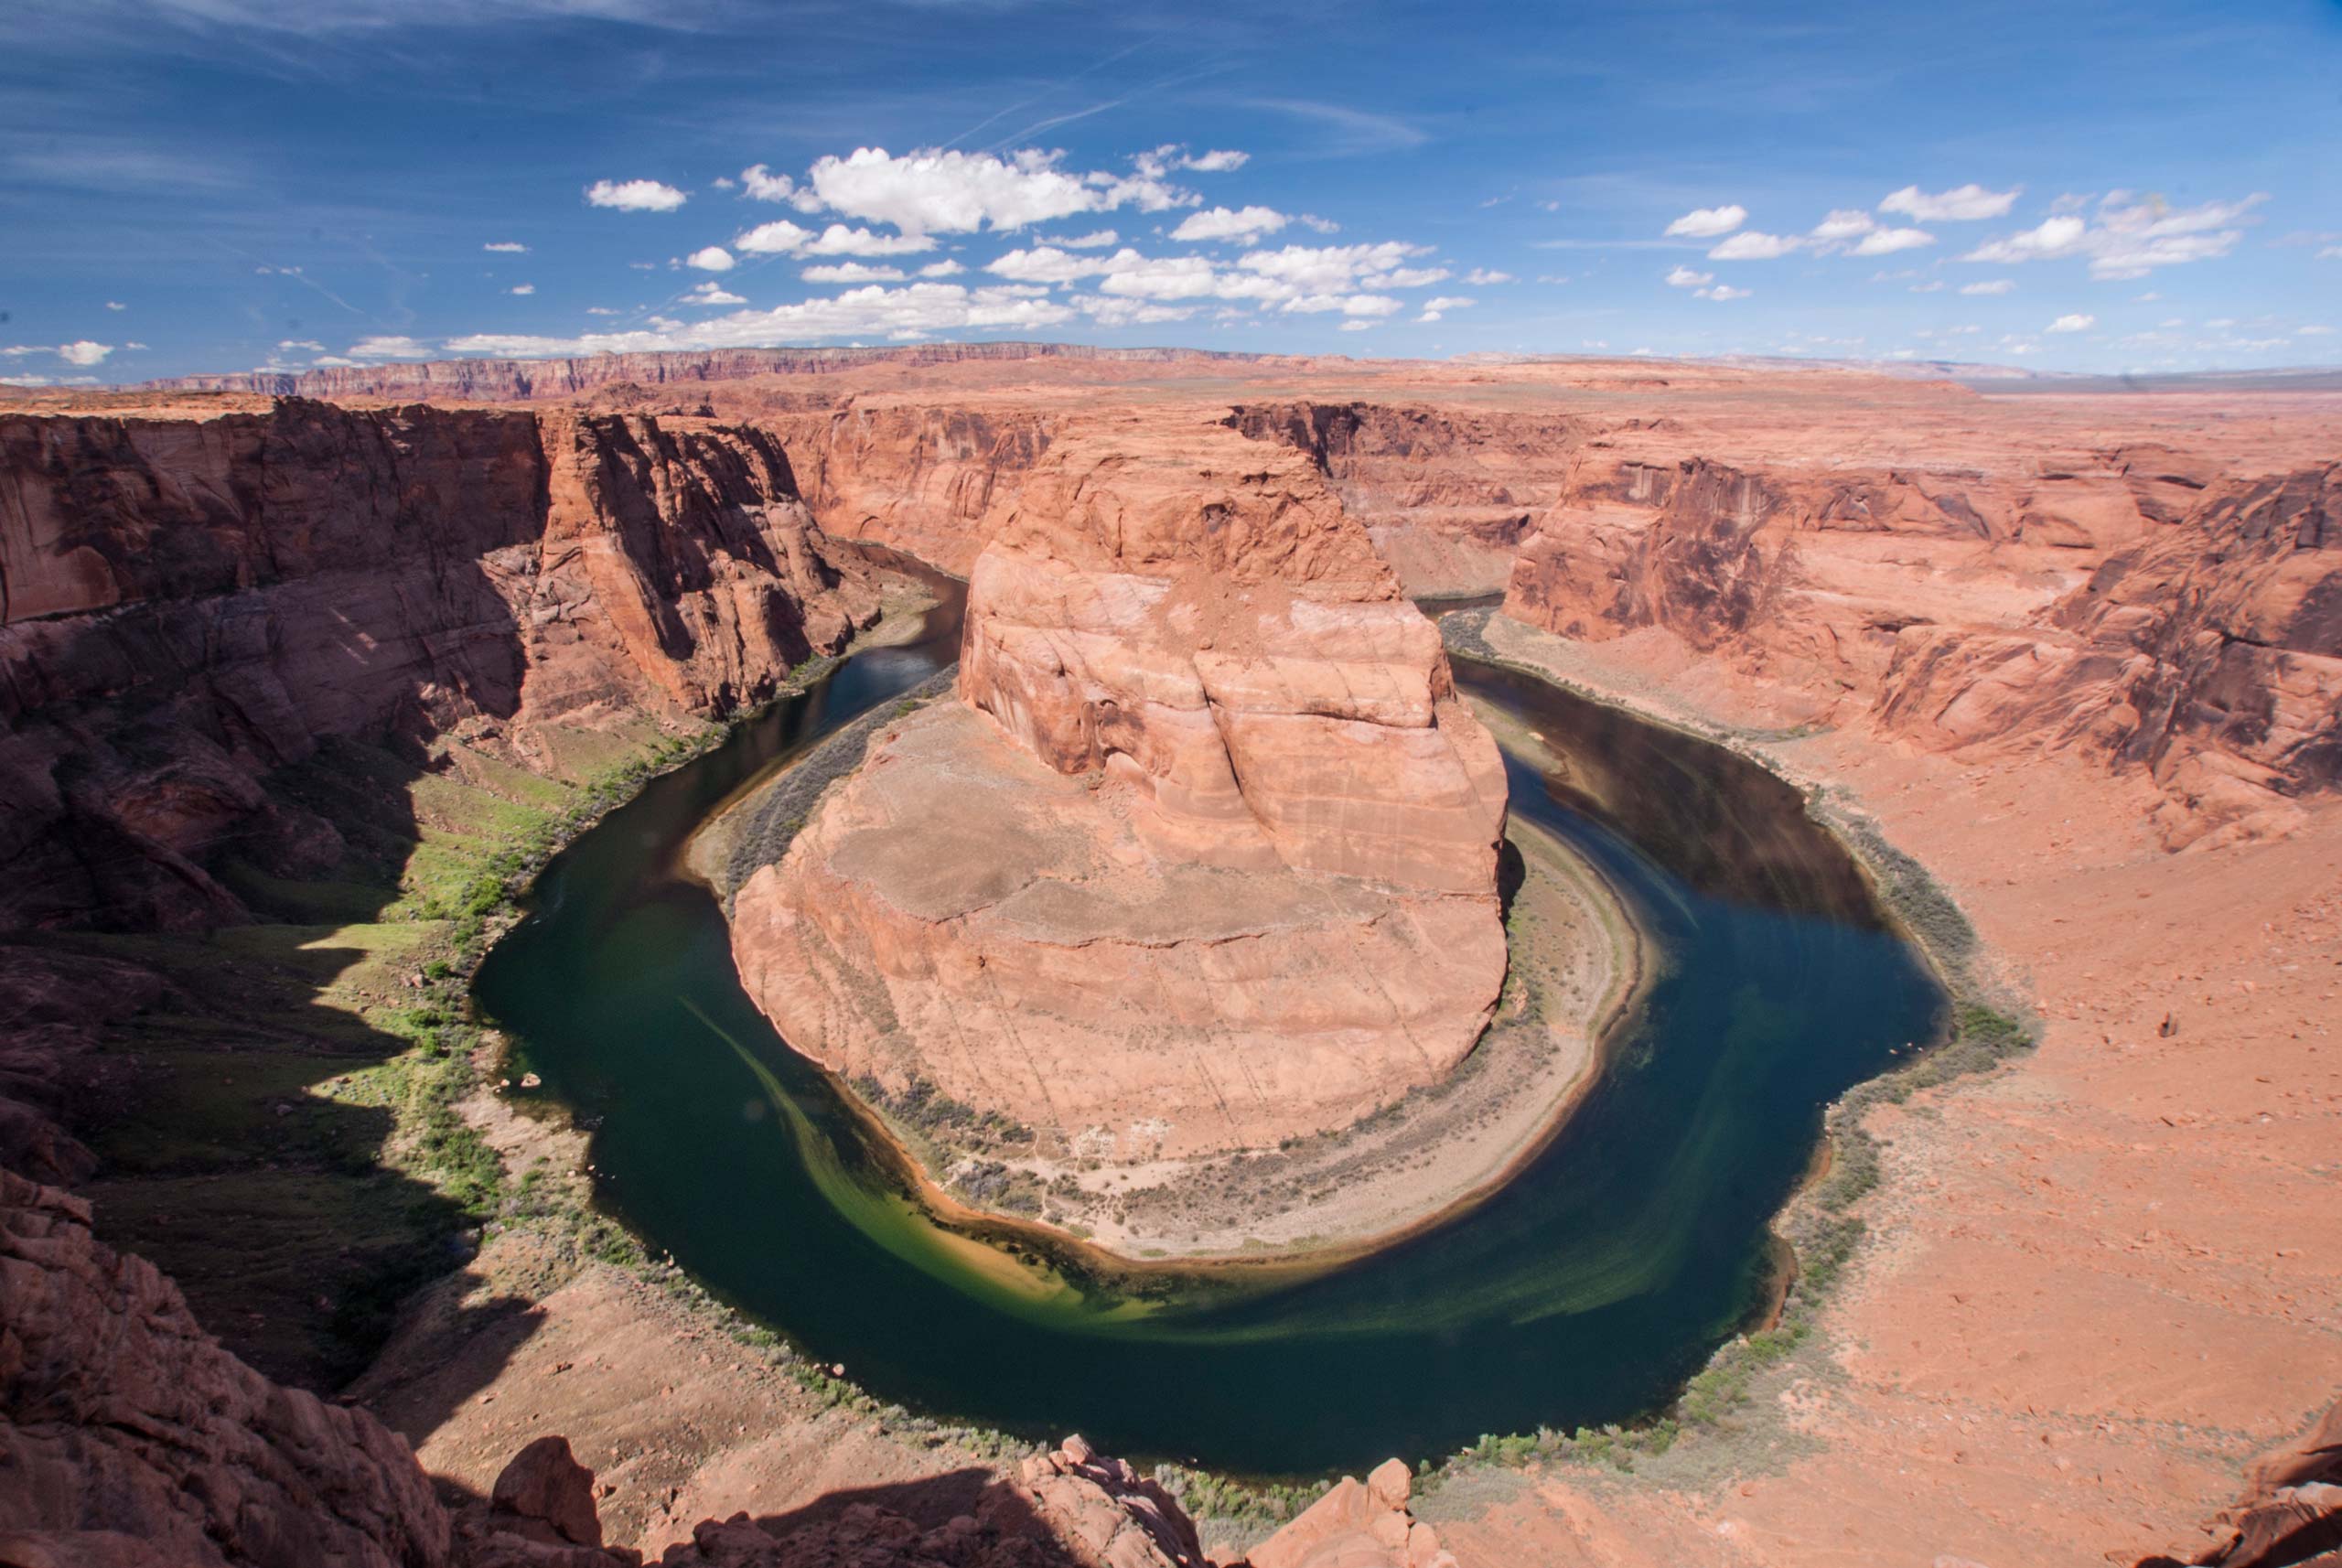 wenige kilometer außerhalb von page (arizona) bildet der colorado river eine hufeneisenförmige schlucht - den horseshoe bend.